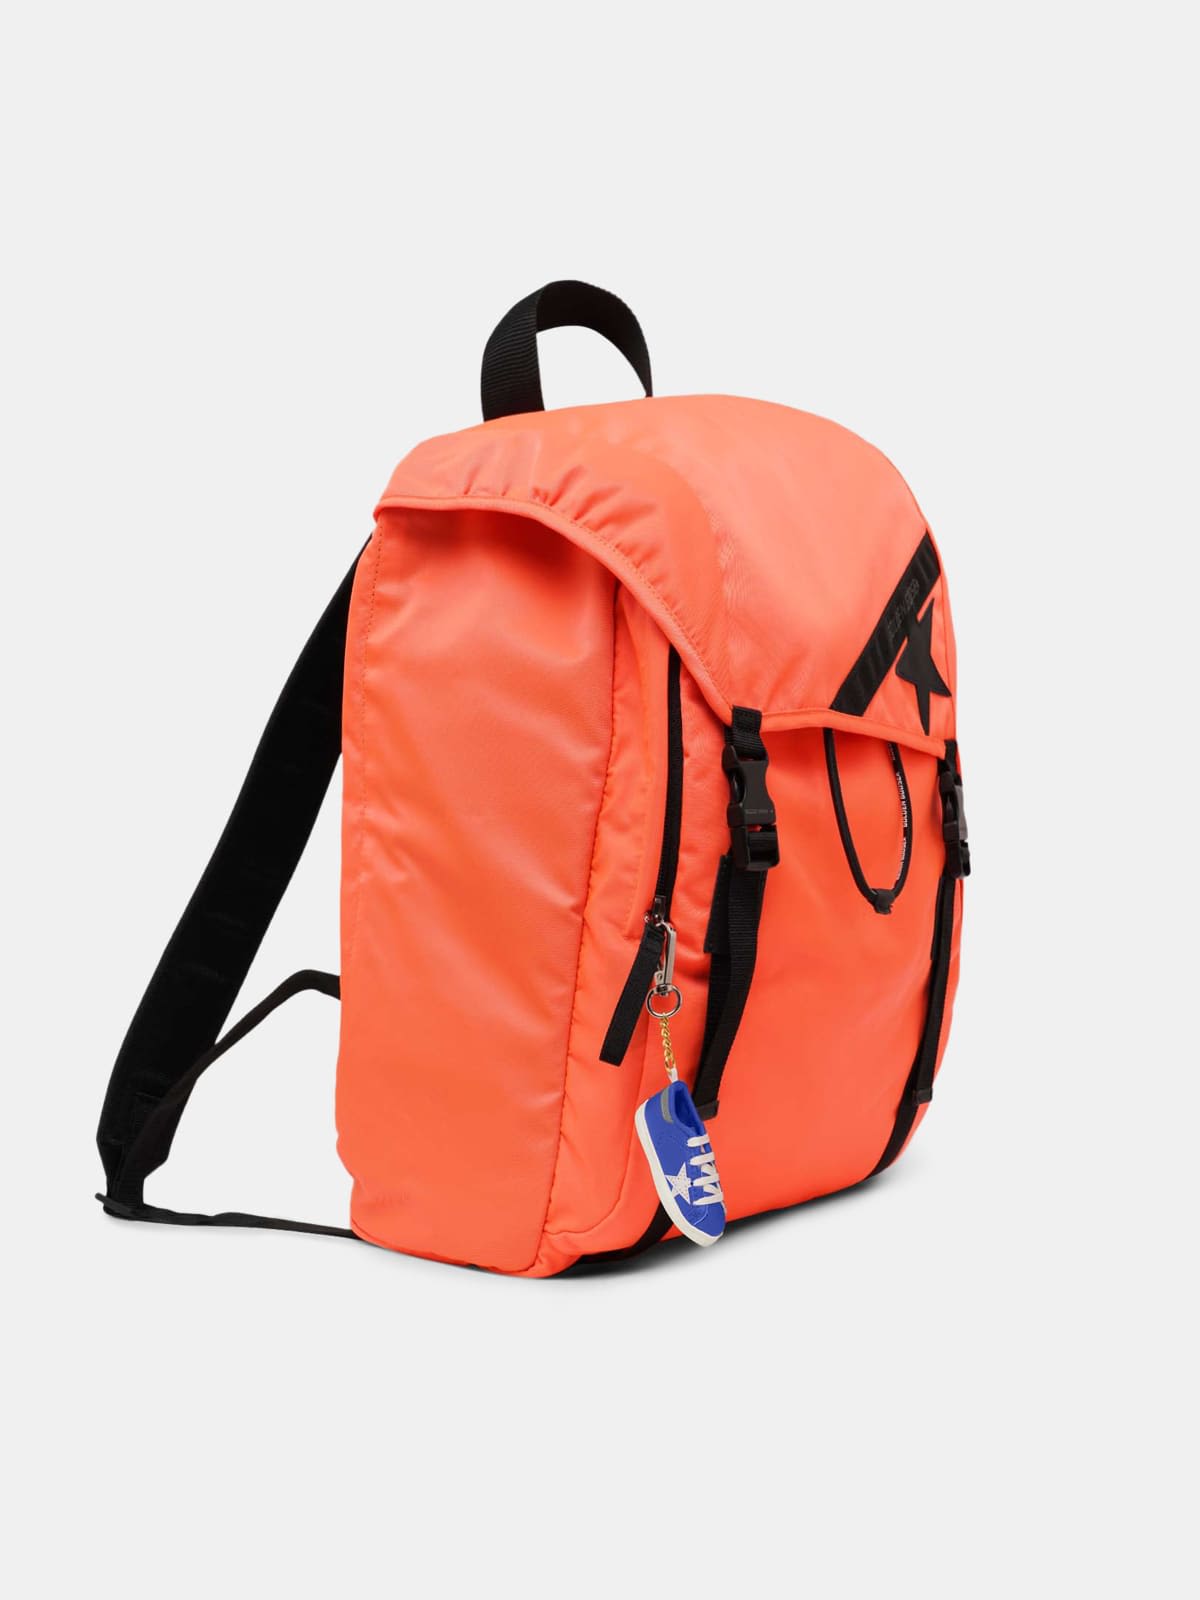 Fluorescent orange nylon Journey backpack